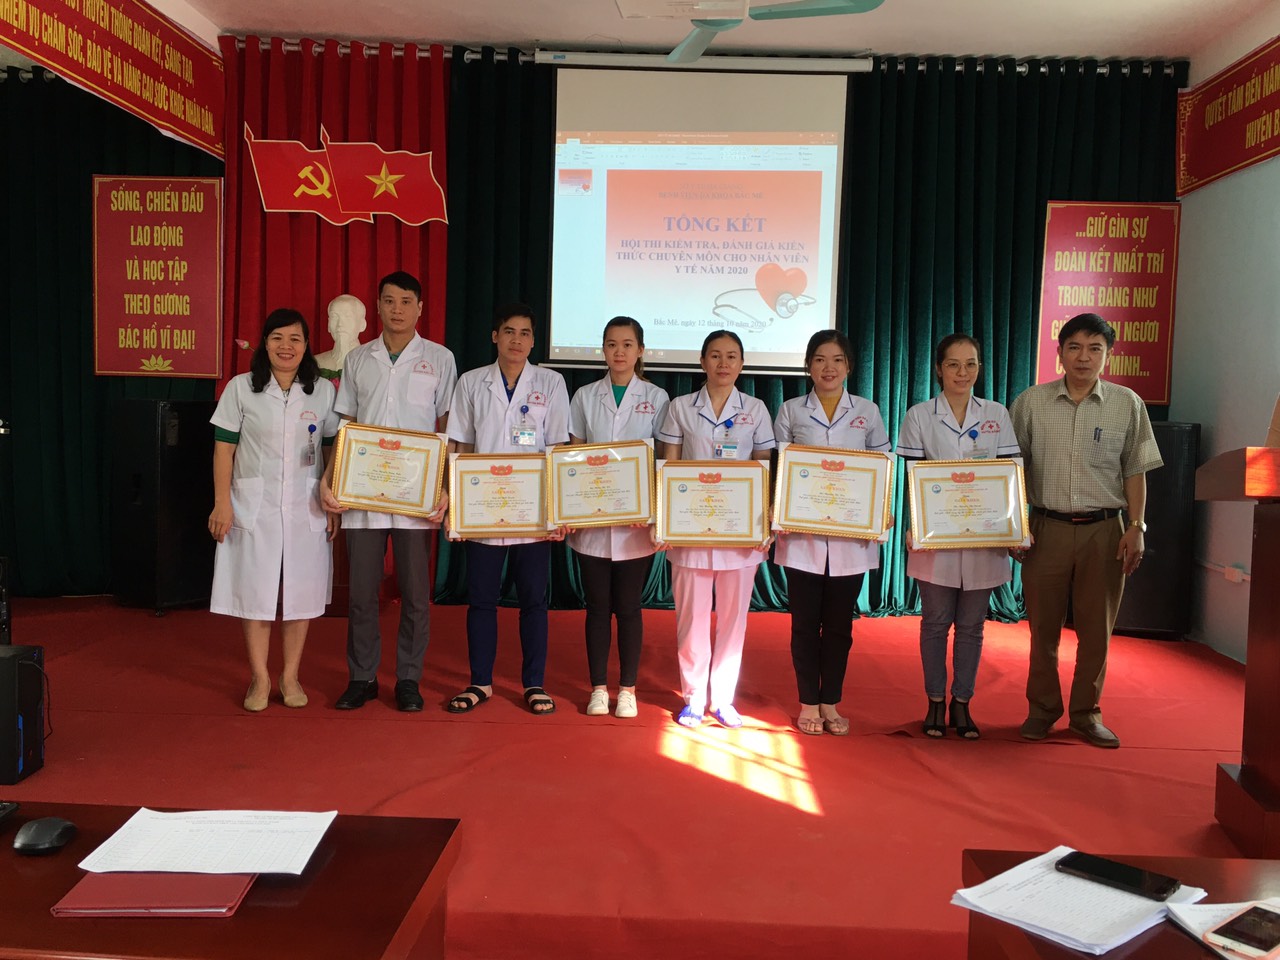 Lãnh đạo BVĐK huyện Bắc Mê trao thưởng cho các nhân viên đạt điểm cao trong Hội thi